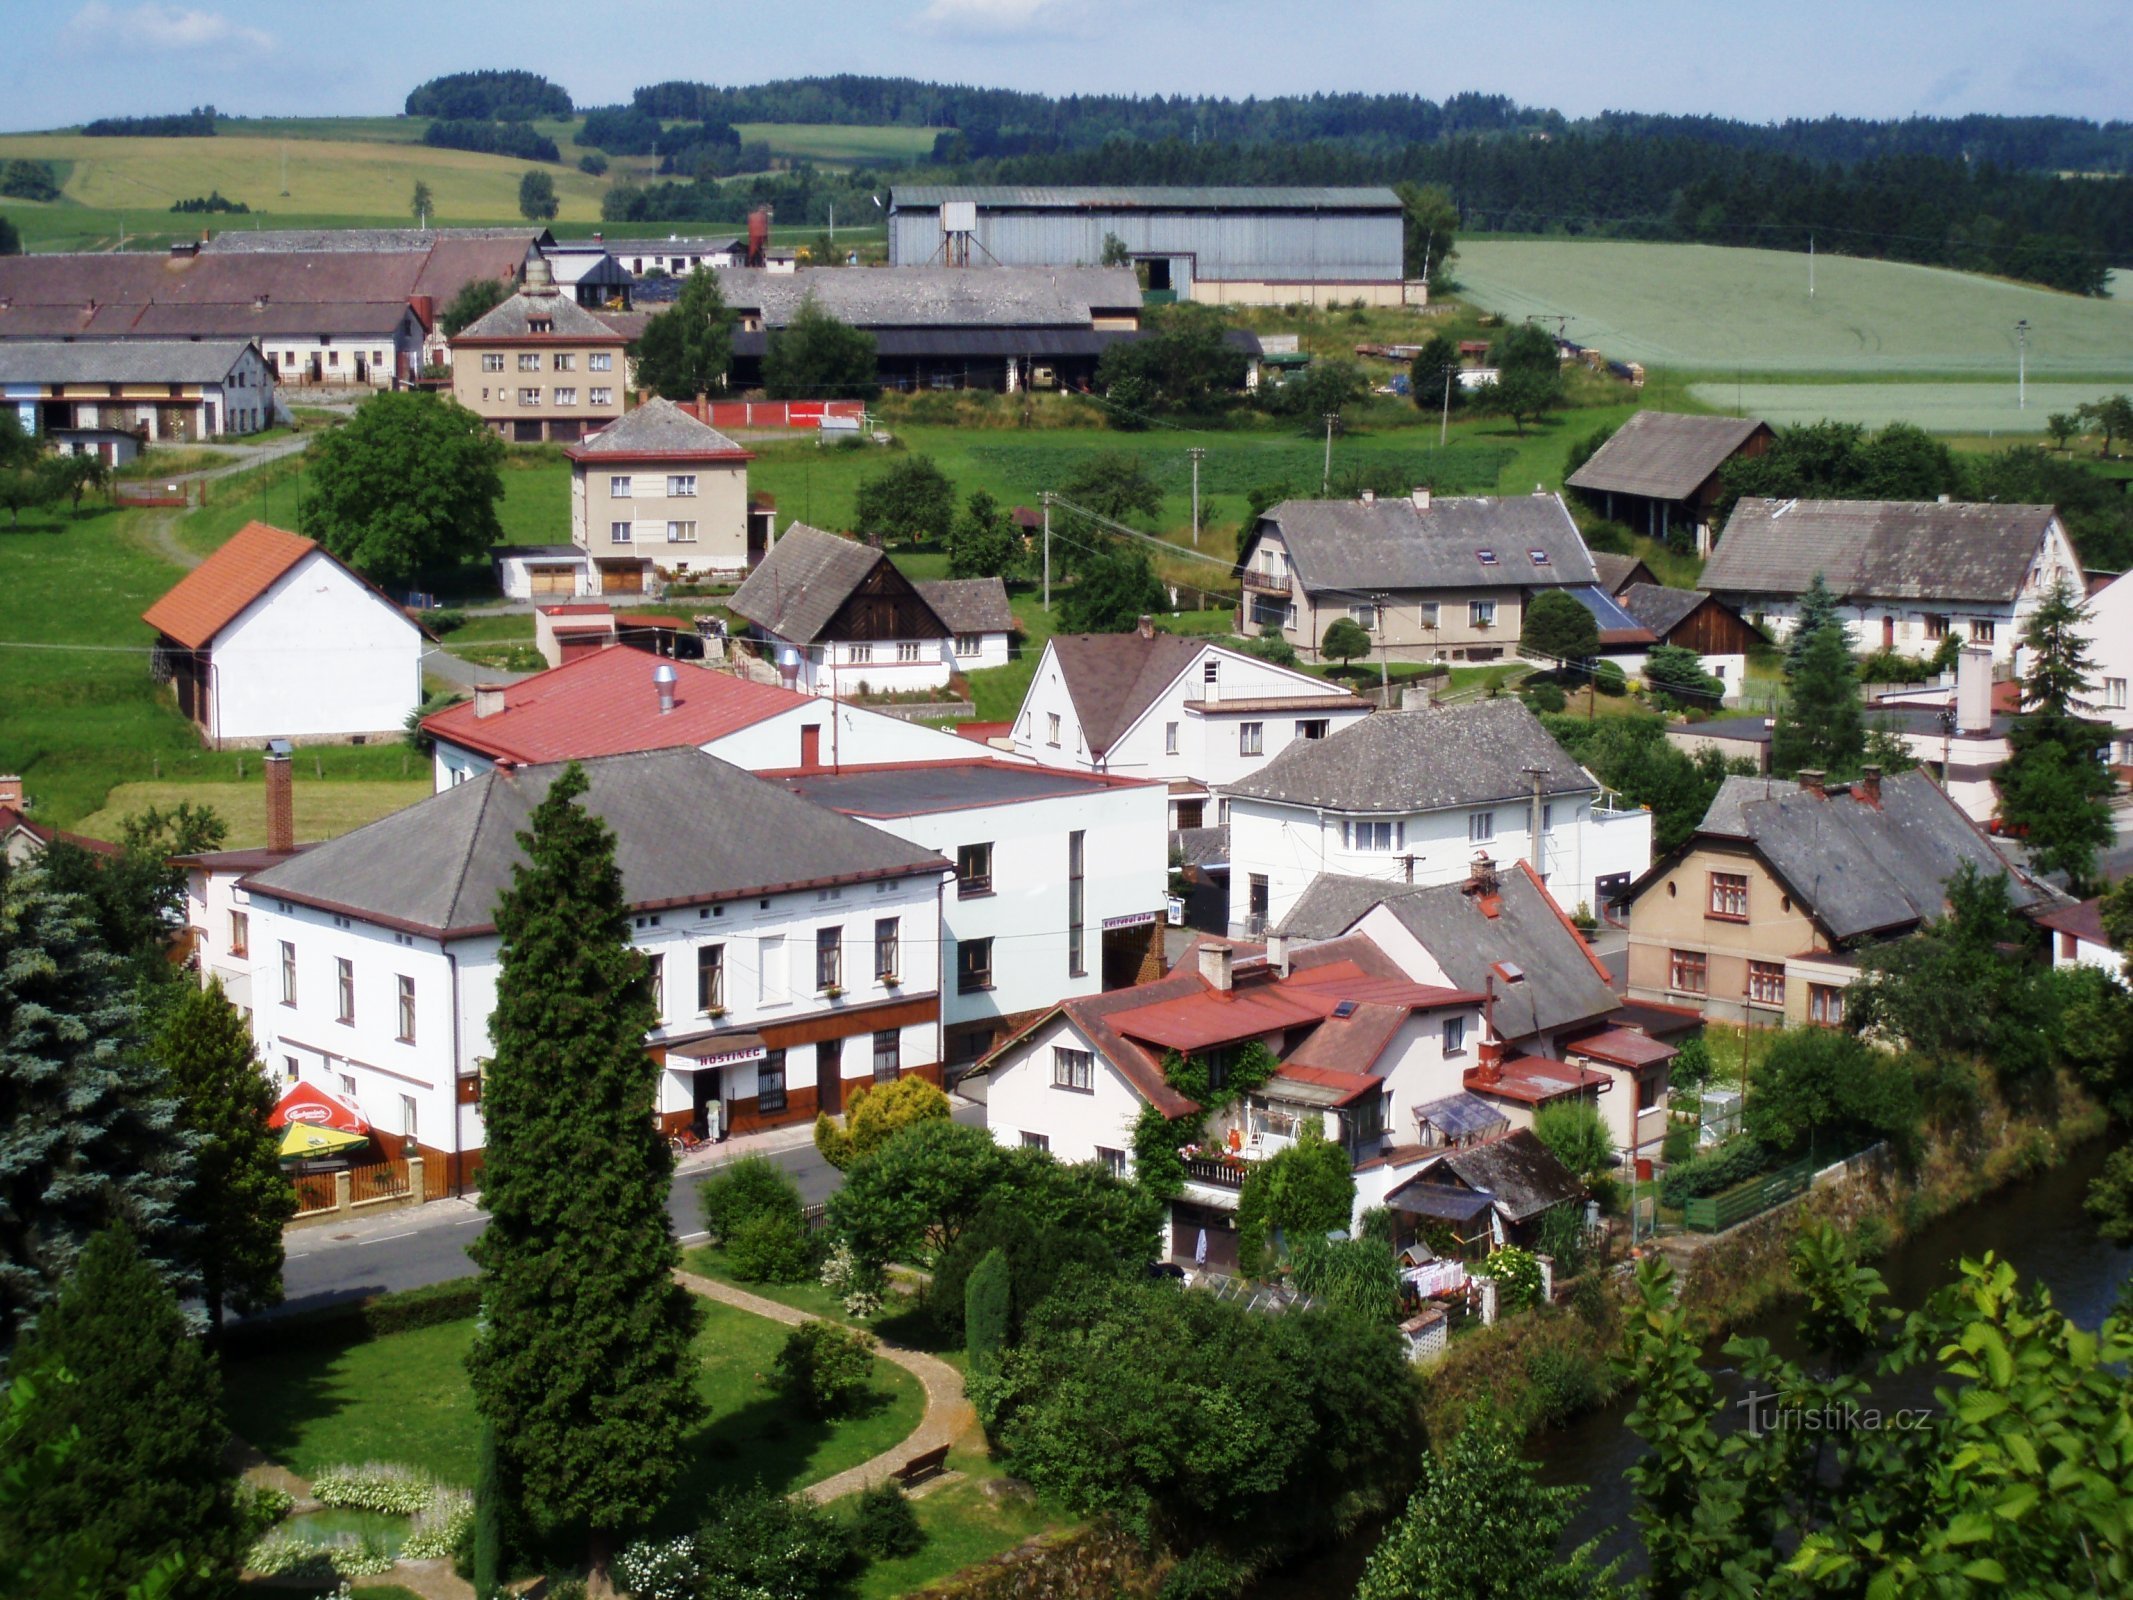 Kilátás a falura a harangtoronyból (Havlovice)